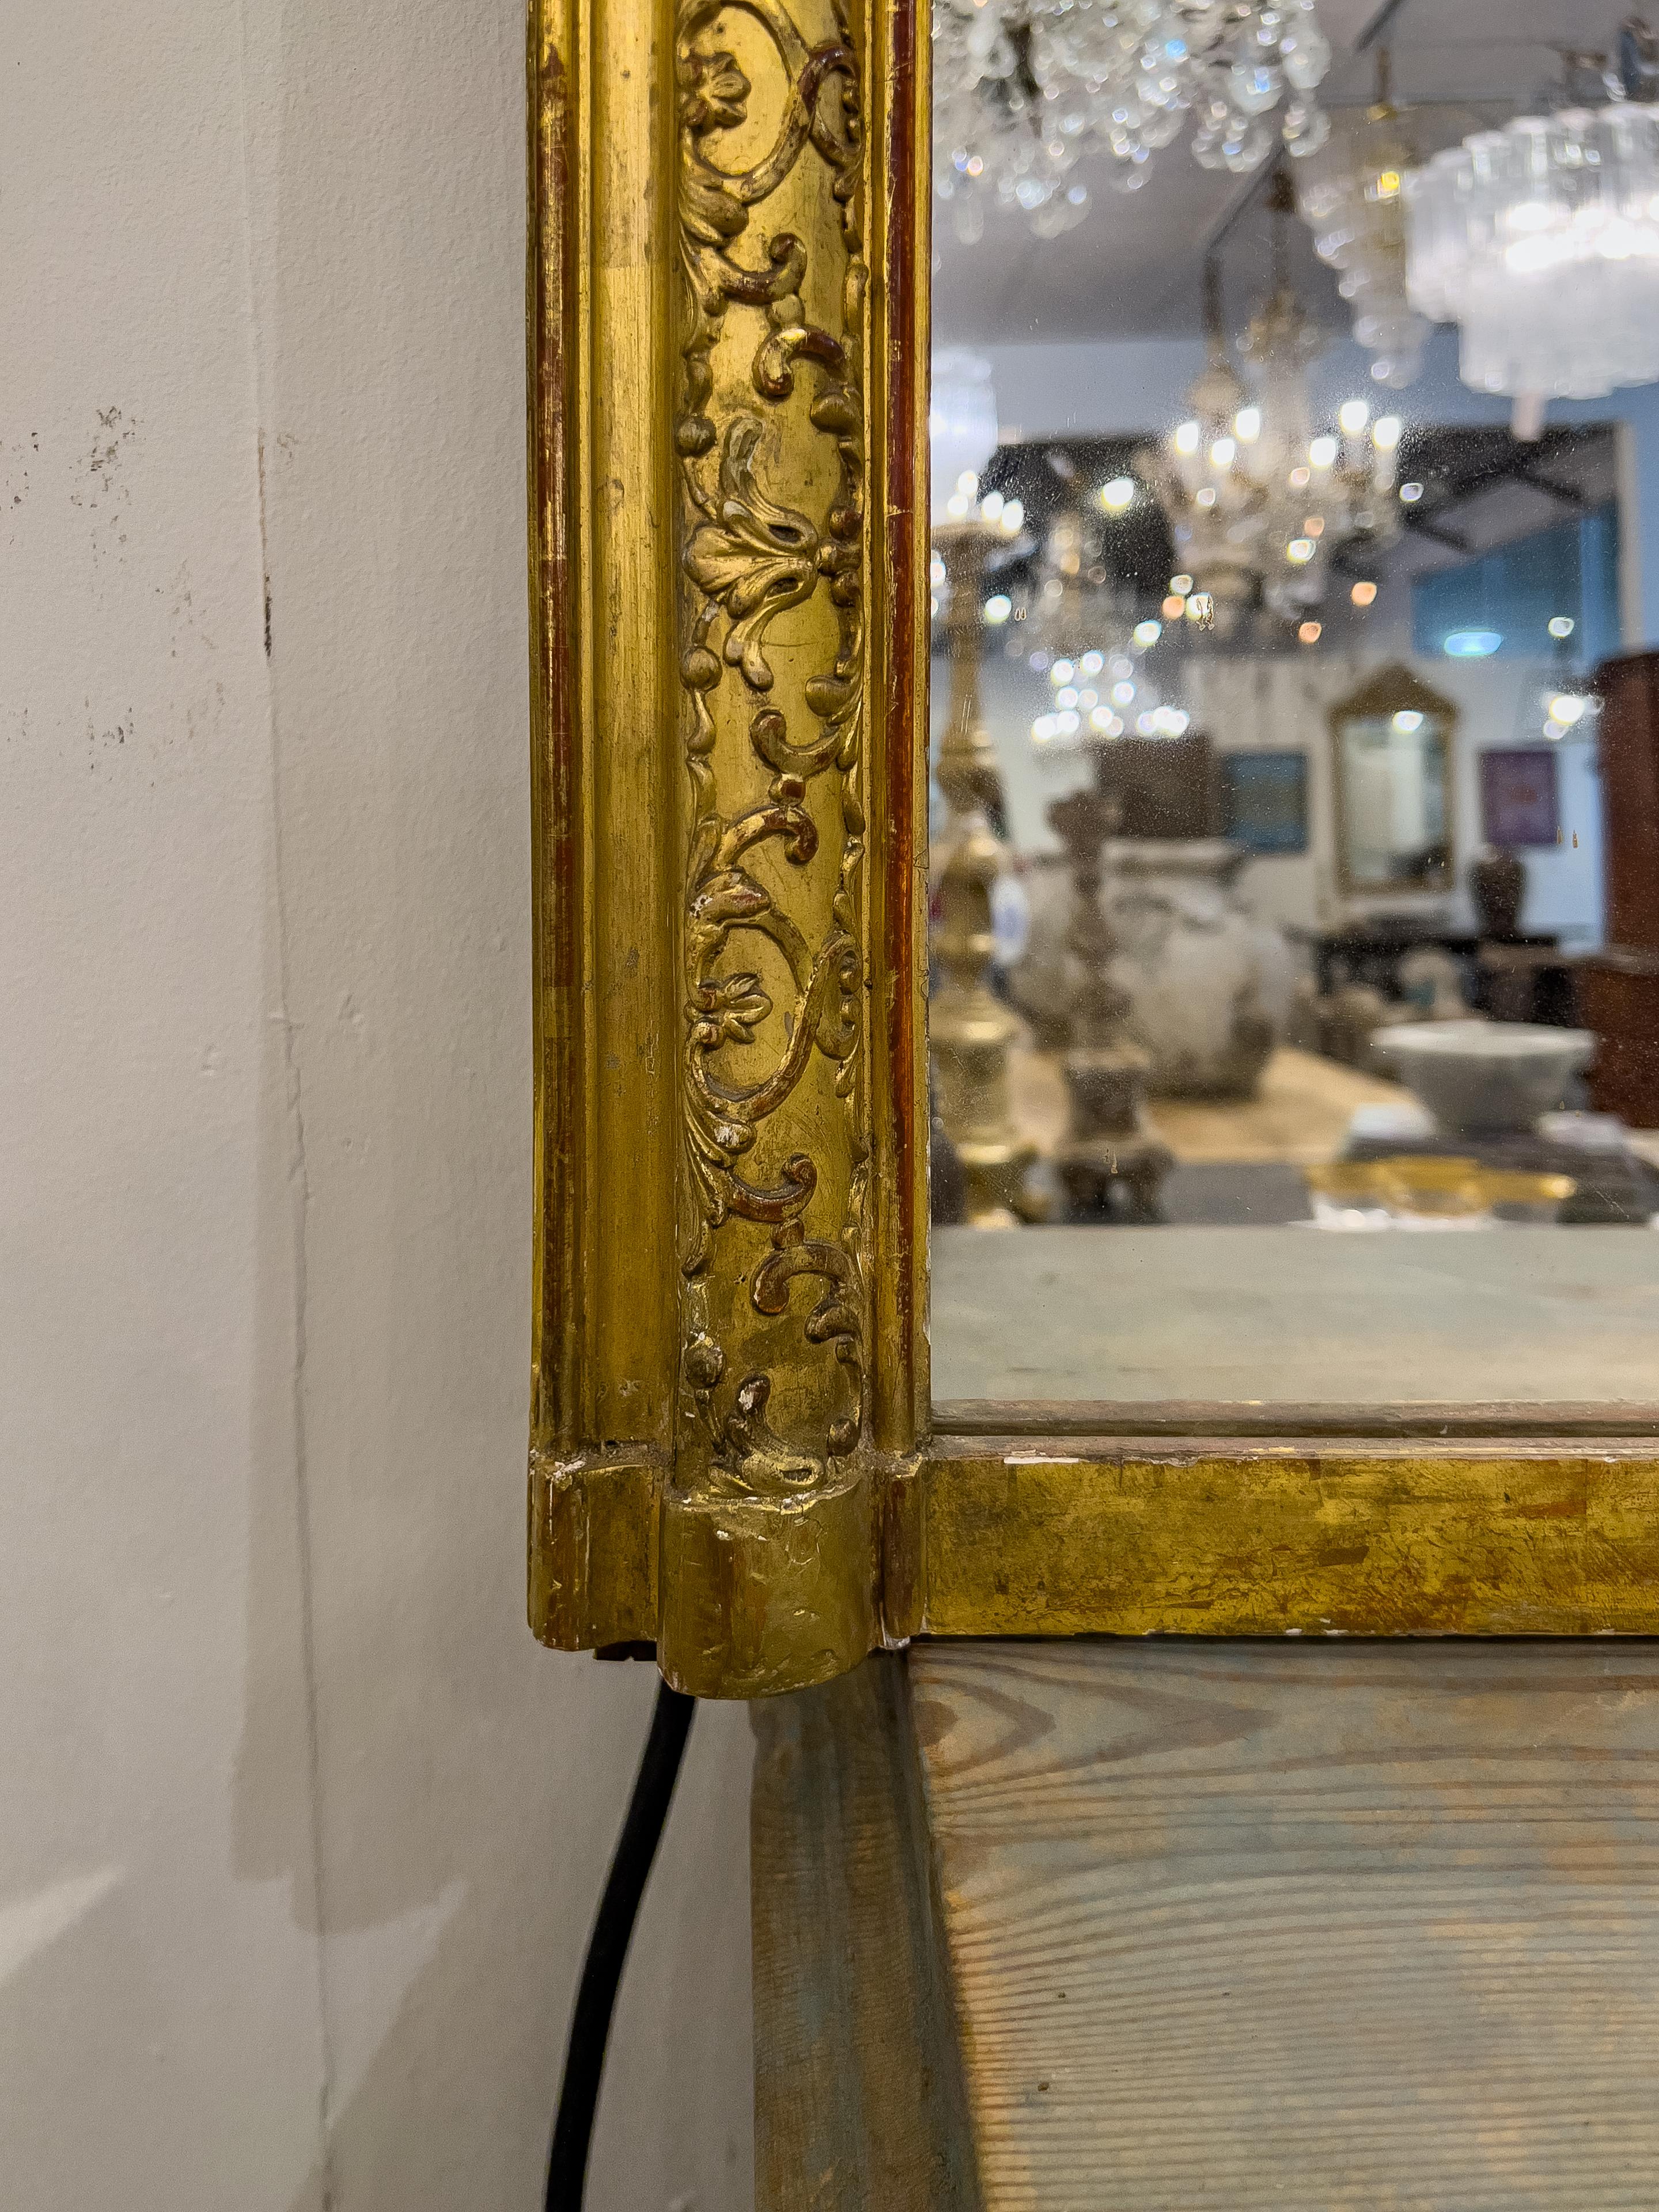 Ein vergoldeter Spiegel aus dem 19. Jahrhundert ist ein exquisiter dekorativer Spiegel, der die Opulenz und die Handwerkskunst dieser Epoche widerspiegelt. Der Rahmen ist vergoldet, d. h. er ist mit einer dünnen Schicht Blattgold oder Goldfarbe